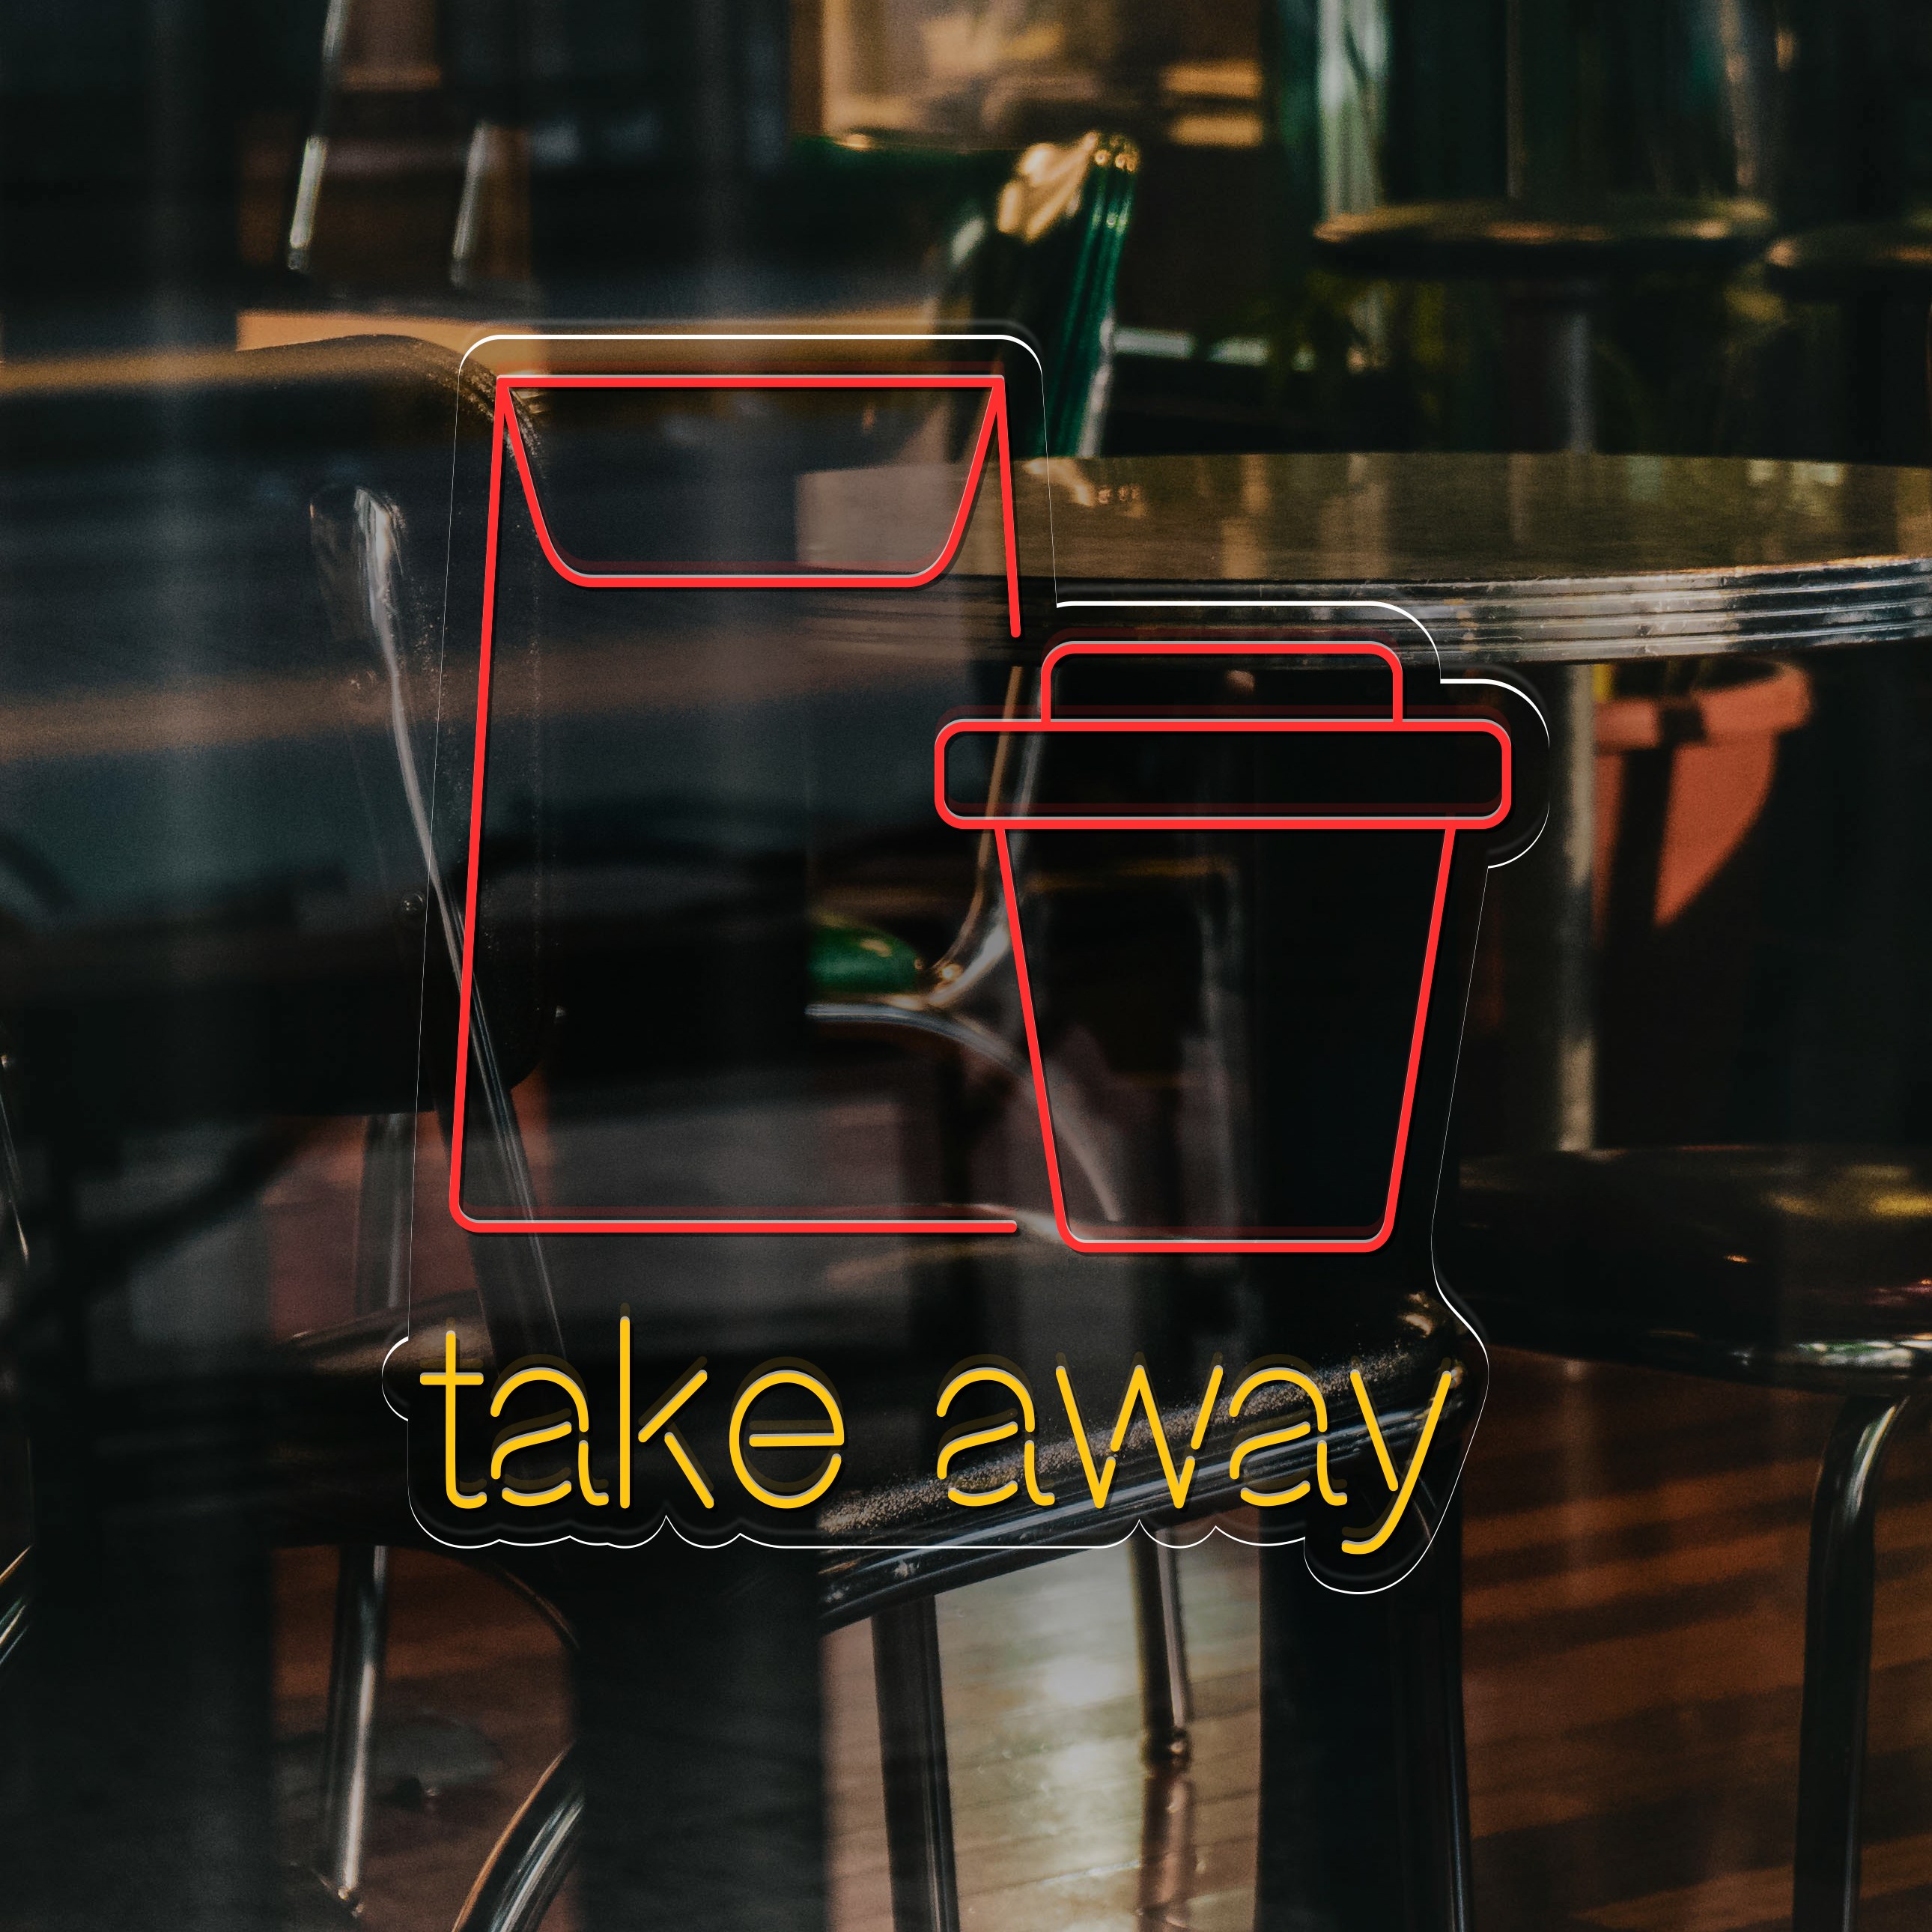 Bild von Neon für Restaurant "Take Away"